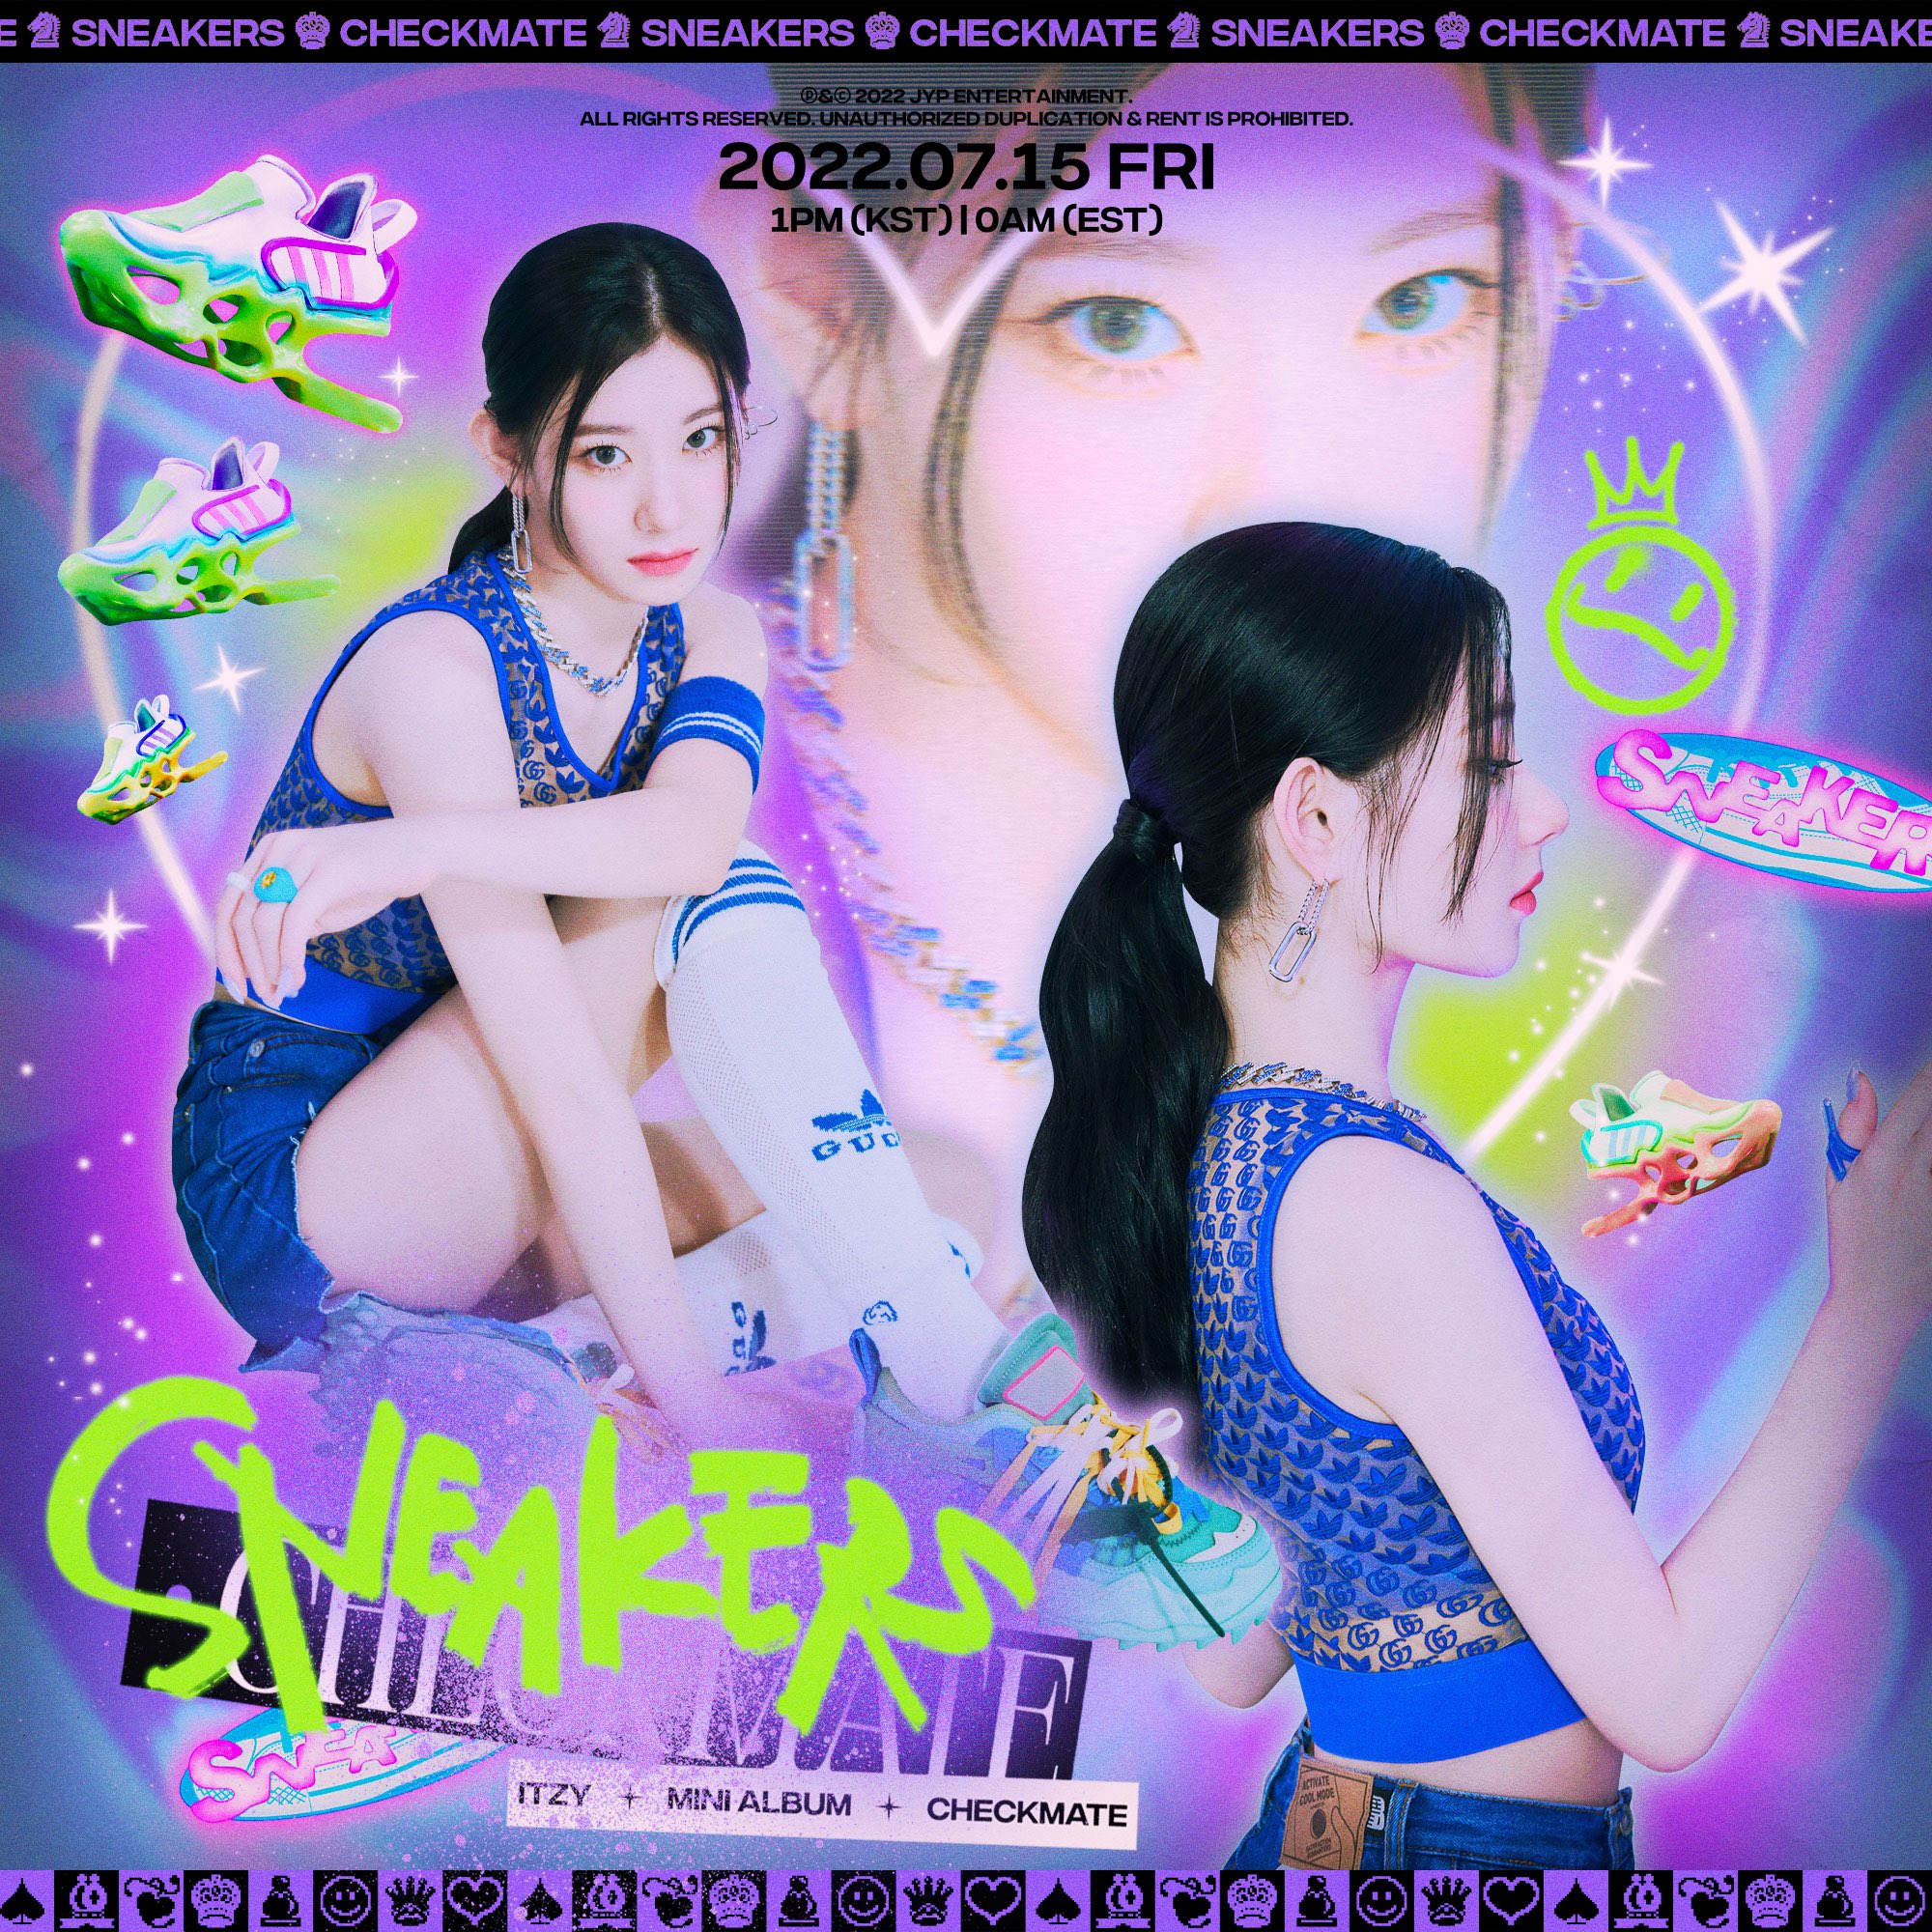 TIEDIC Kpop Yuna Itzy Individual Poster Checkmate Ver.1 Sexy Retro